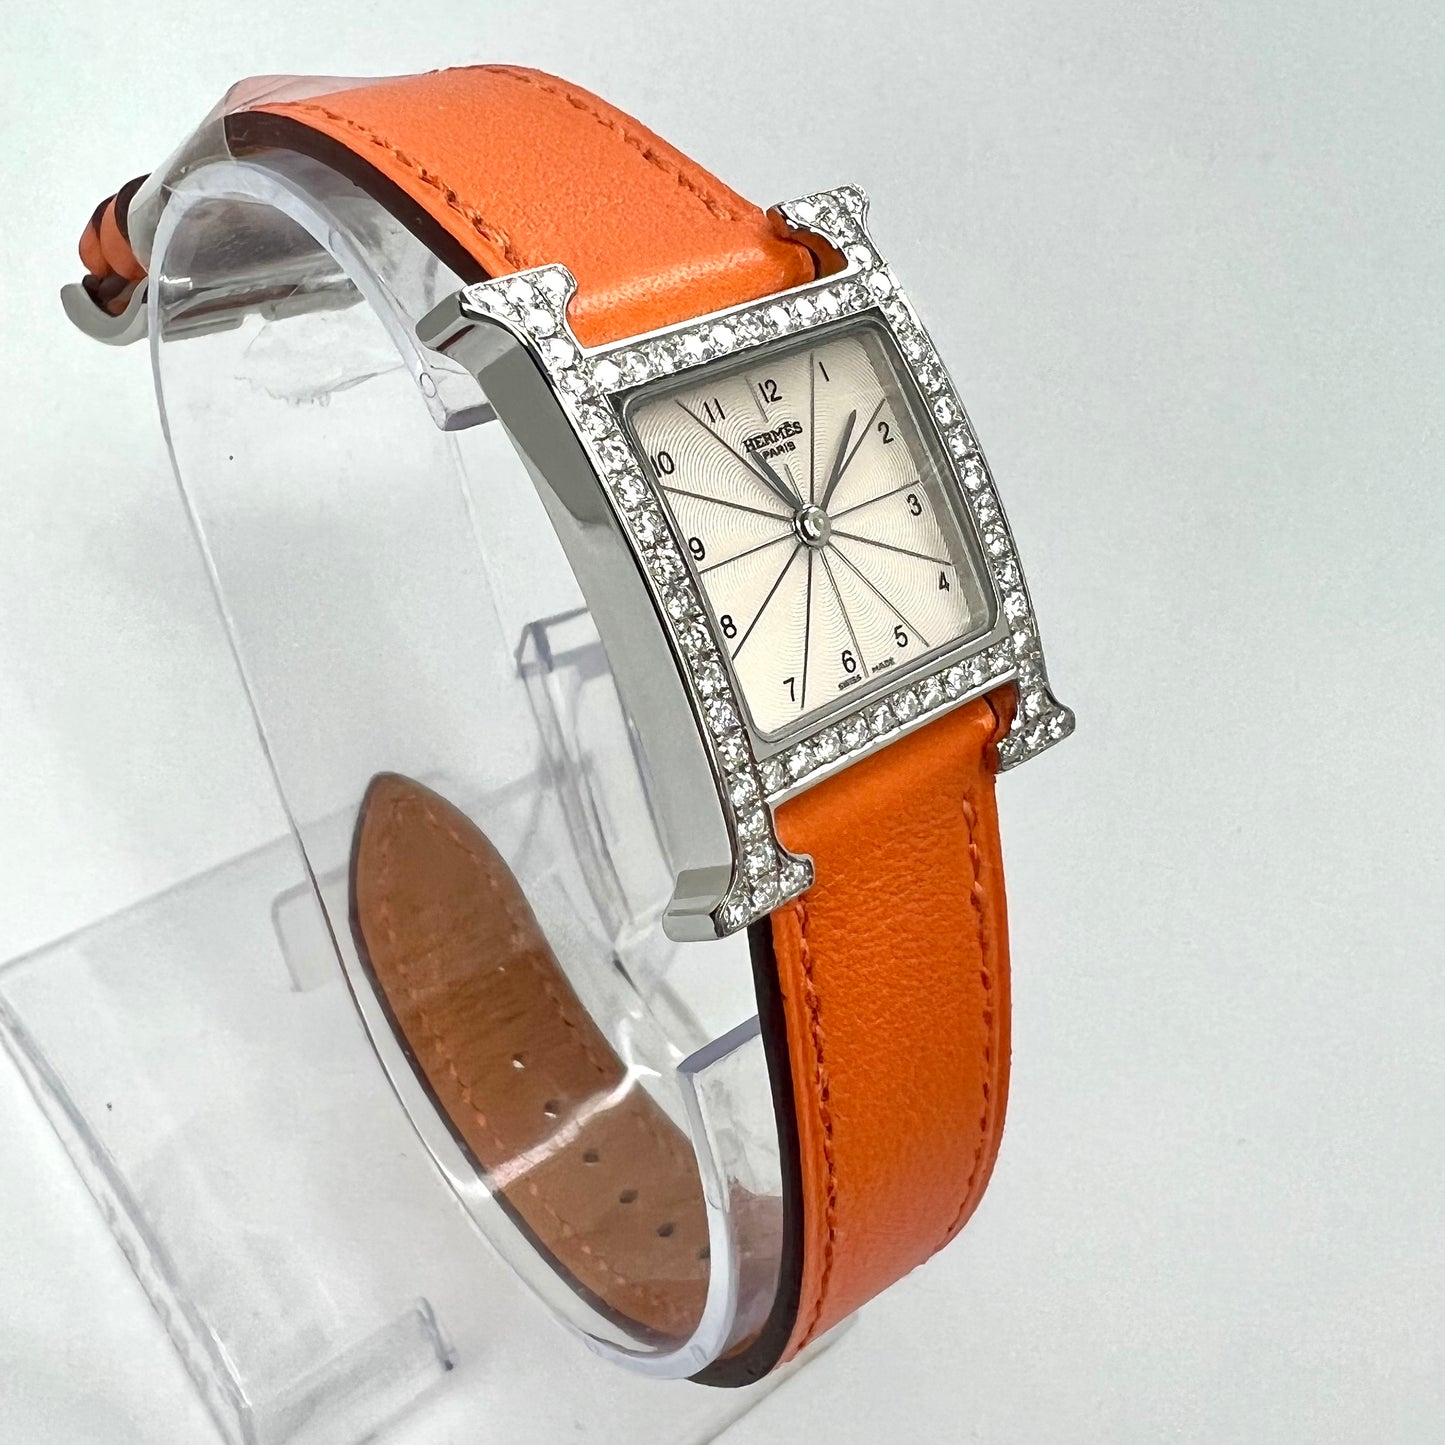 HERMES HEURE H 25mm Steel Watch 0.91TCW DIAMOND Bezel